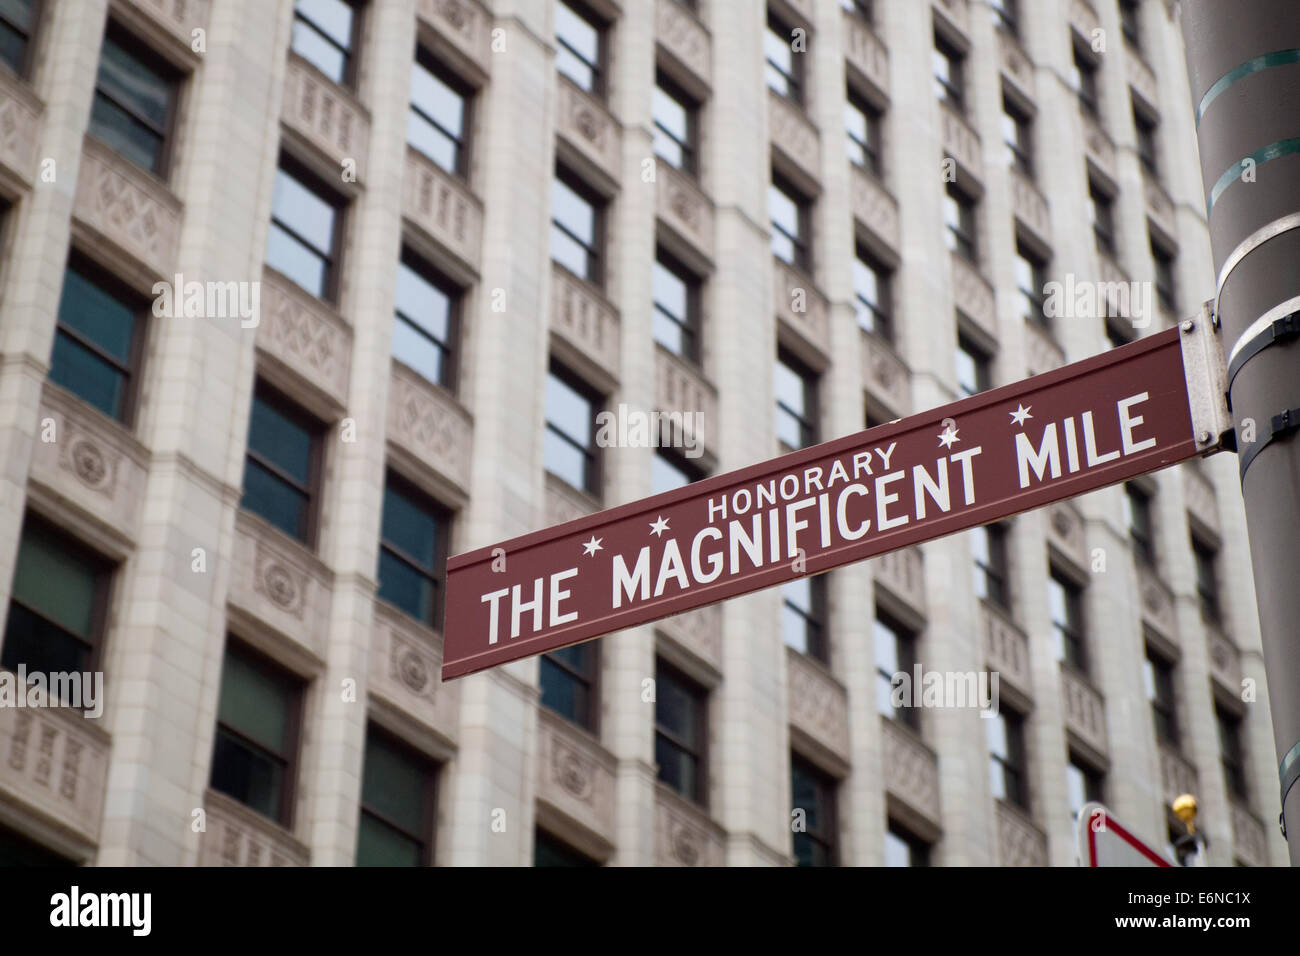 Strada segno per il Magnificent Mile, noto anche come North Michigan Avenue a Chicago, Illinois. Wrigley Building in background. Foto Stock